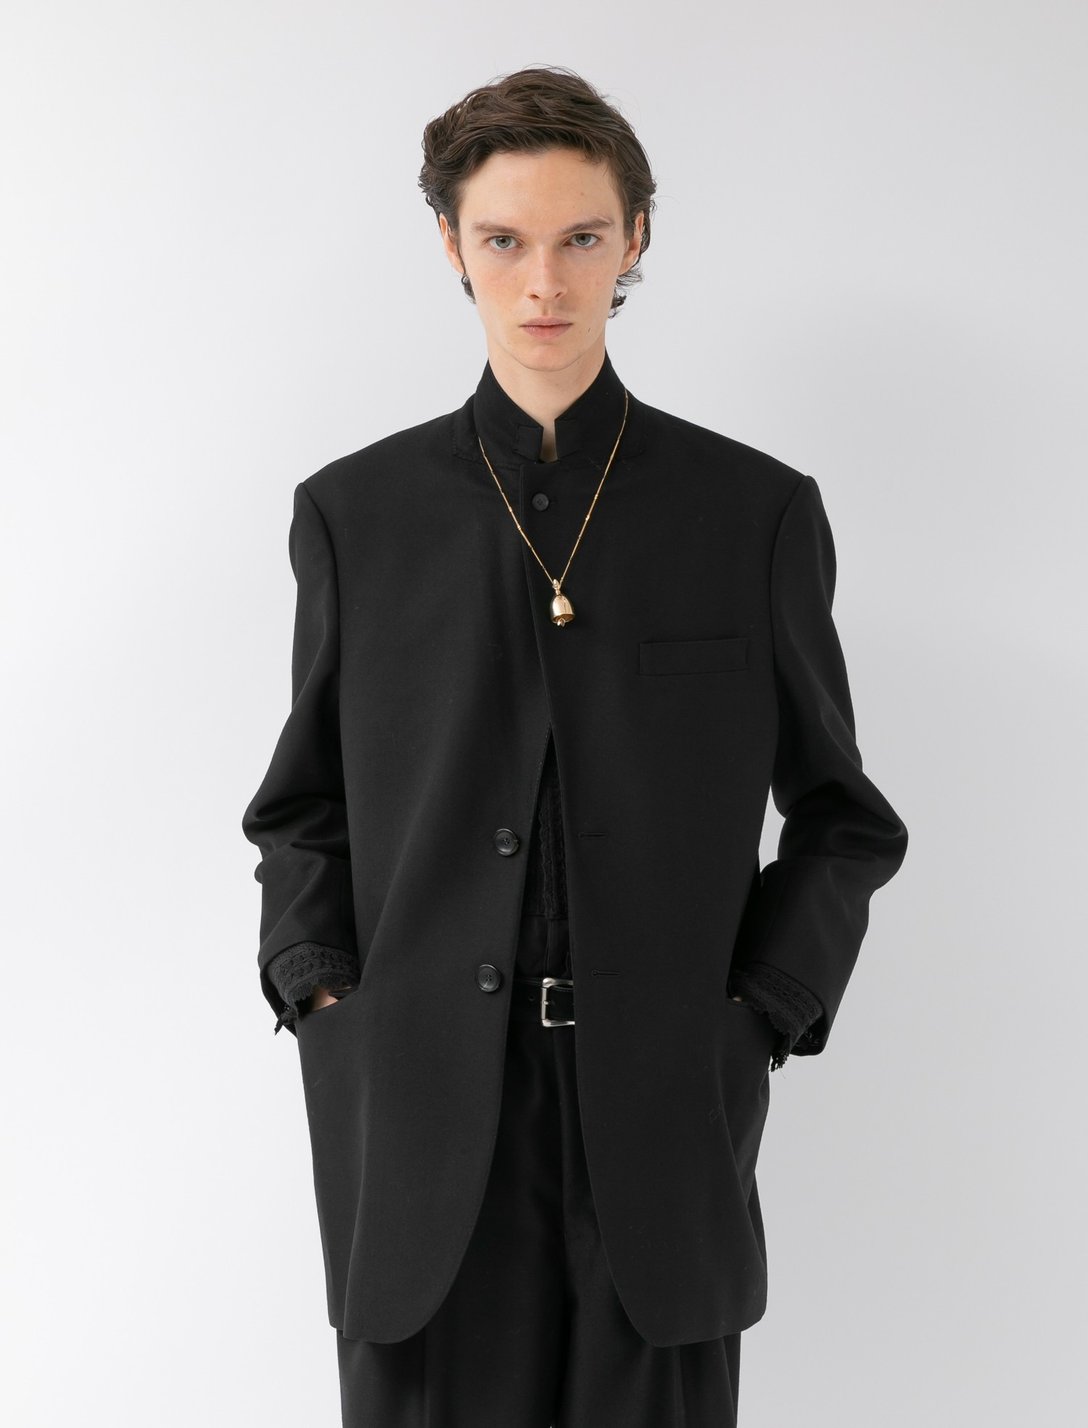 ブラックのジャケットを着用した男性モデル